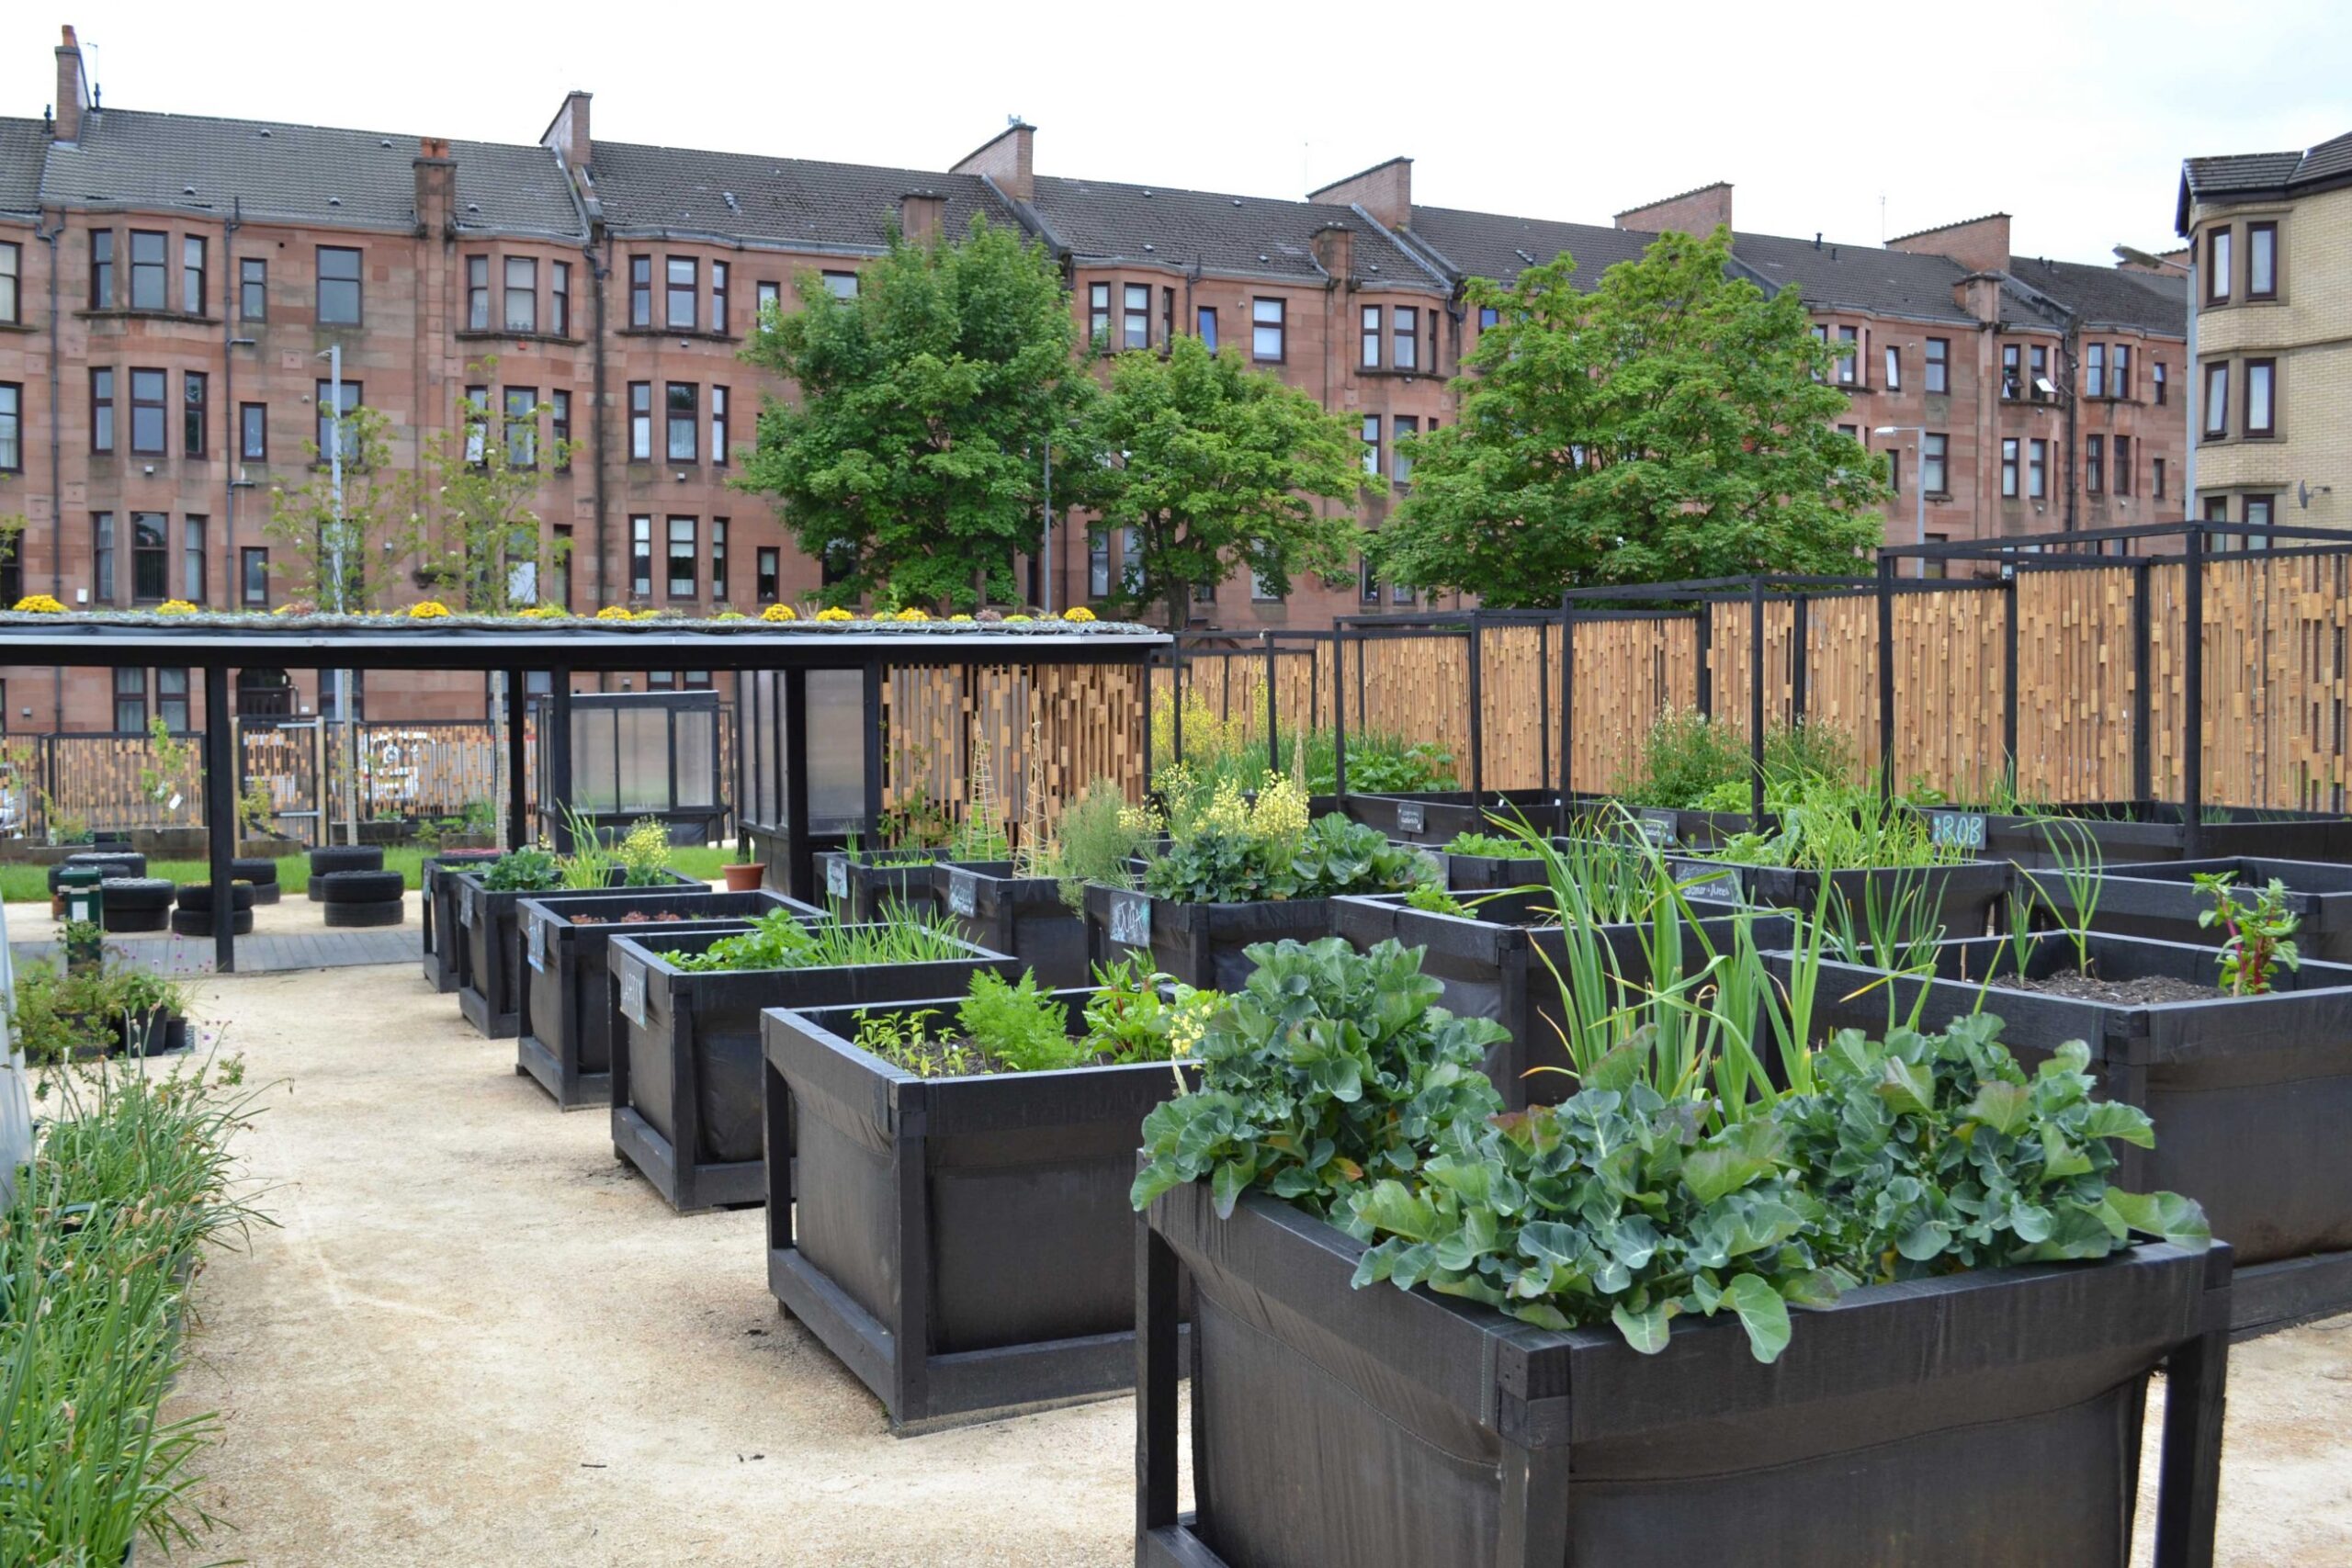 Community garden in North Glasgow , designed by ERZ architects.